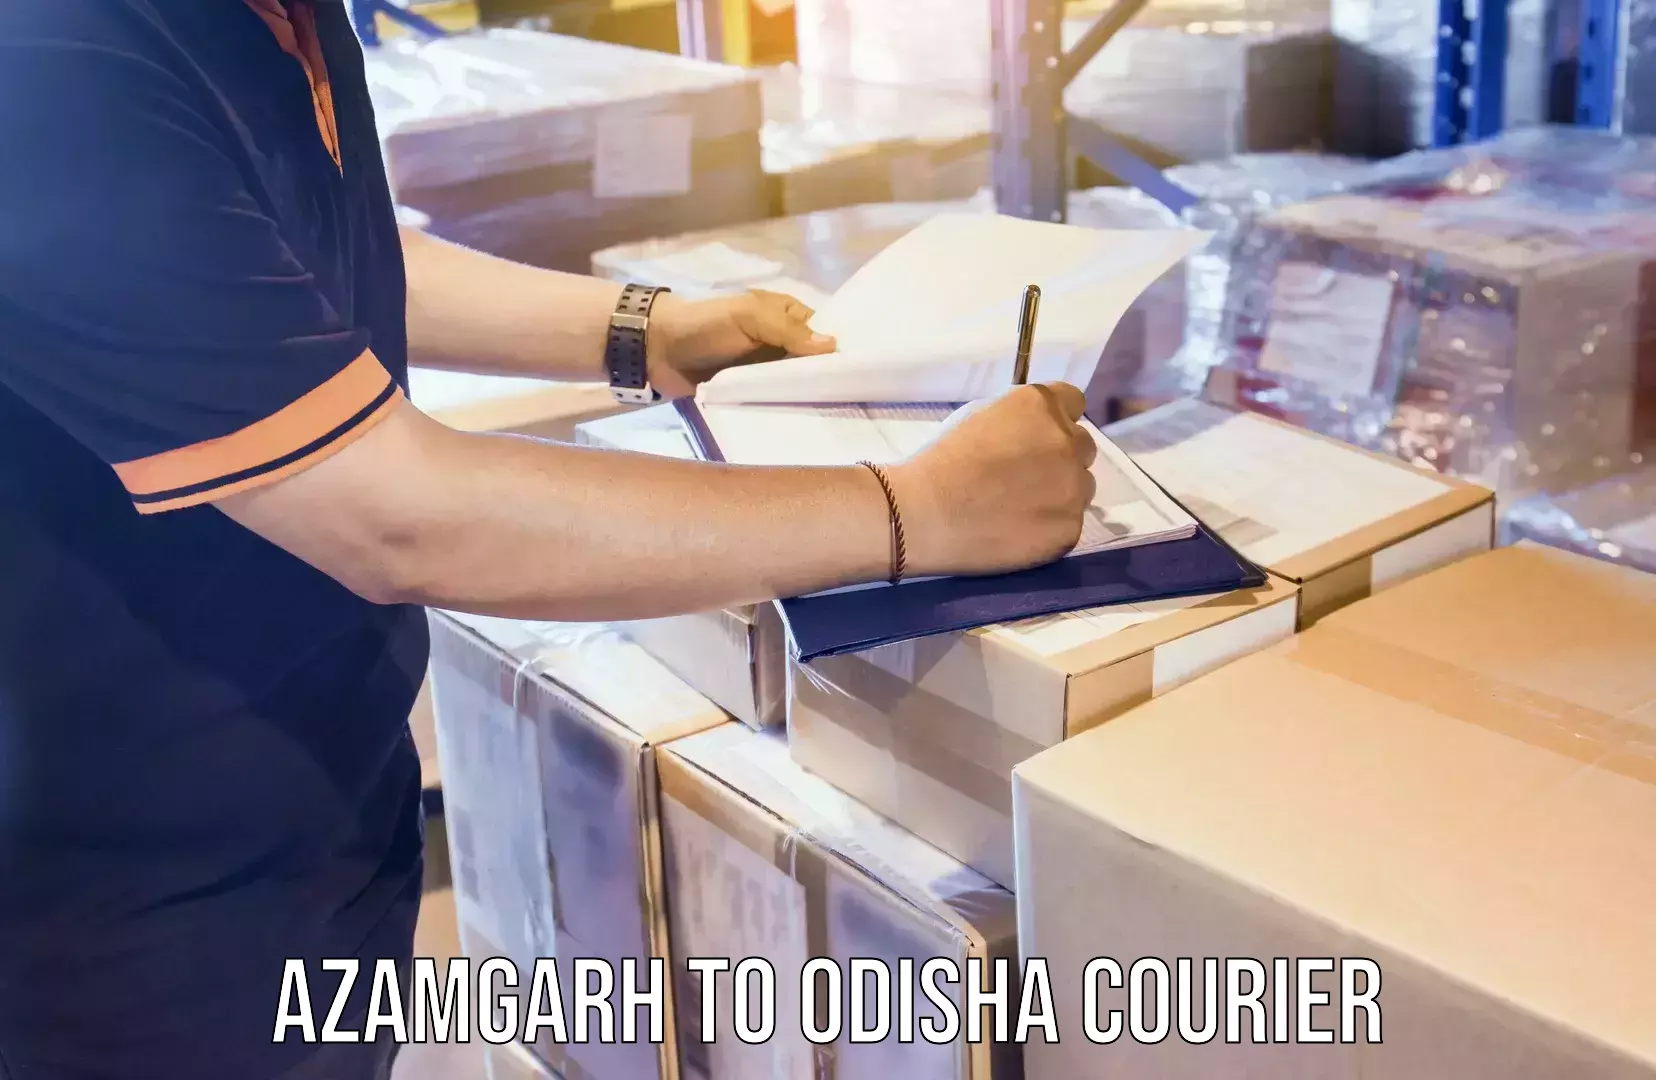 Global courier networks Azamgarh to Odisha